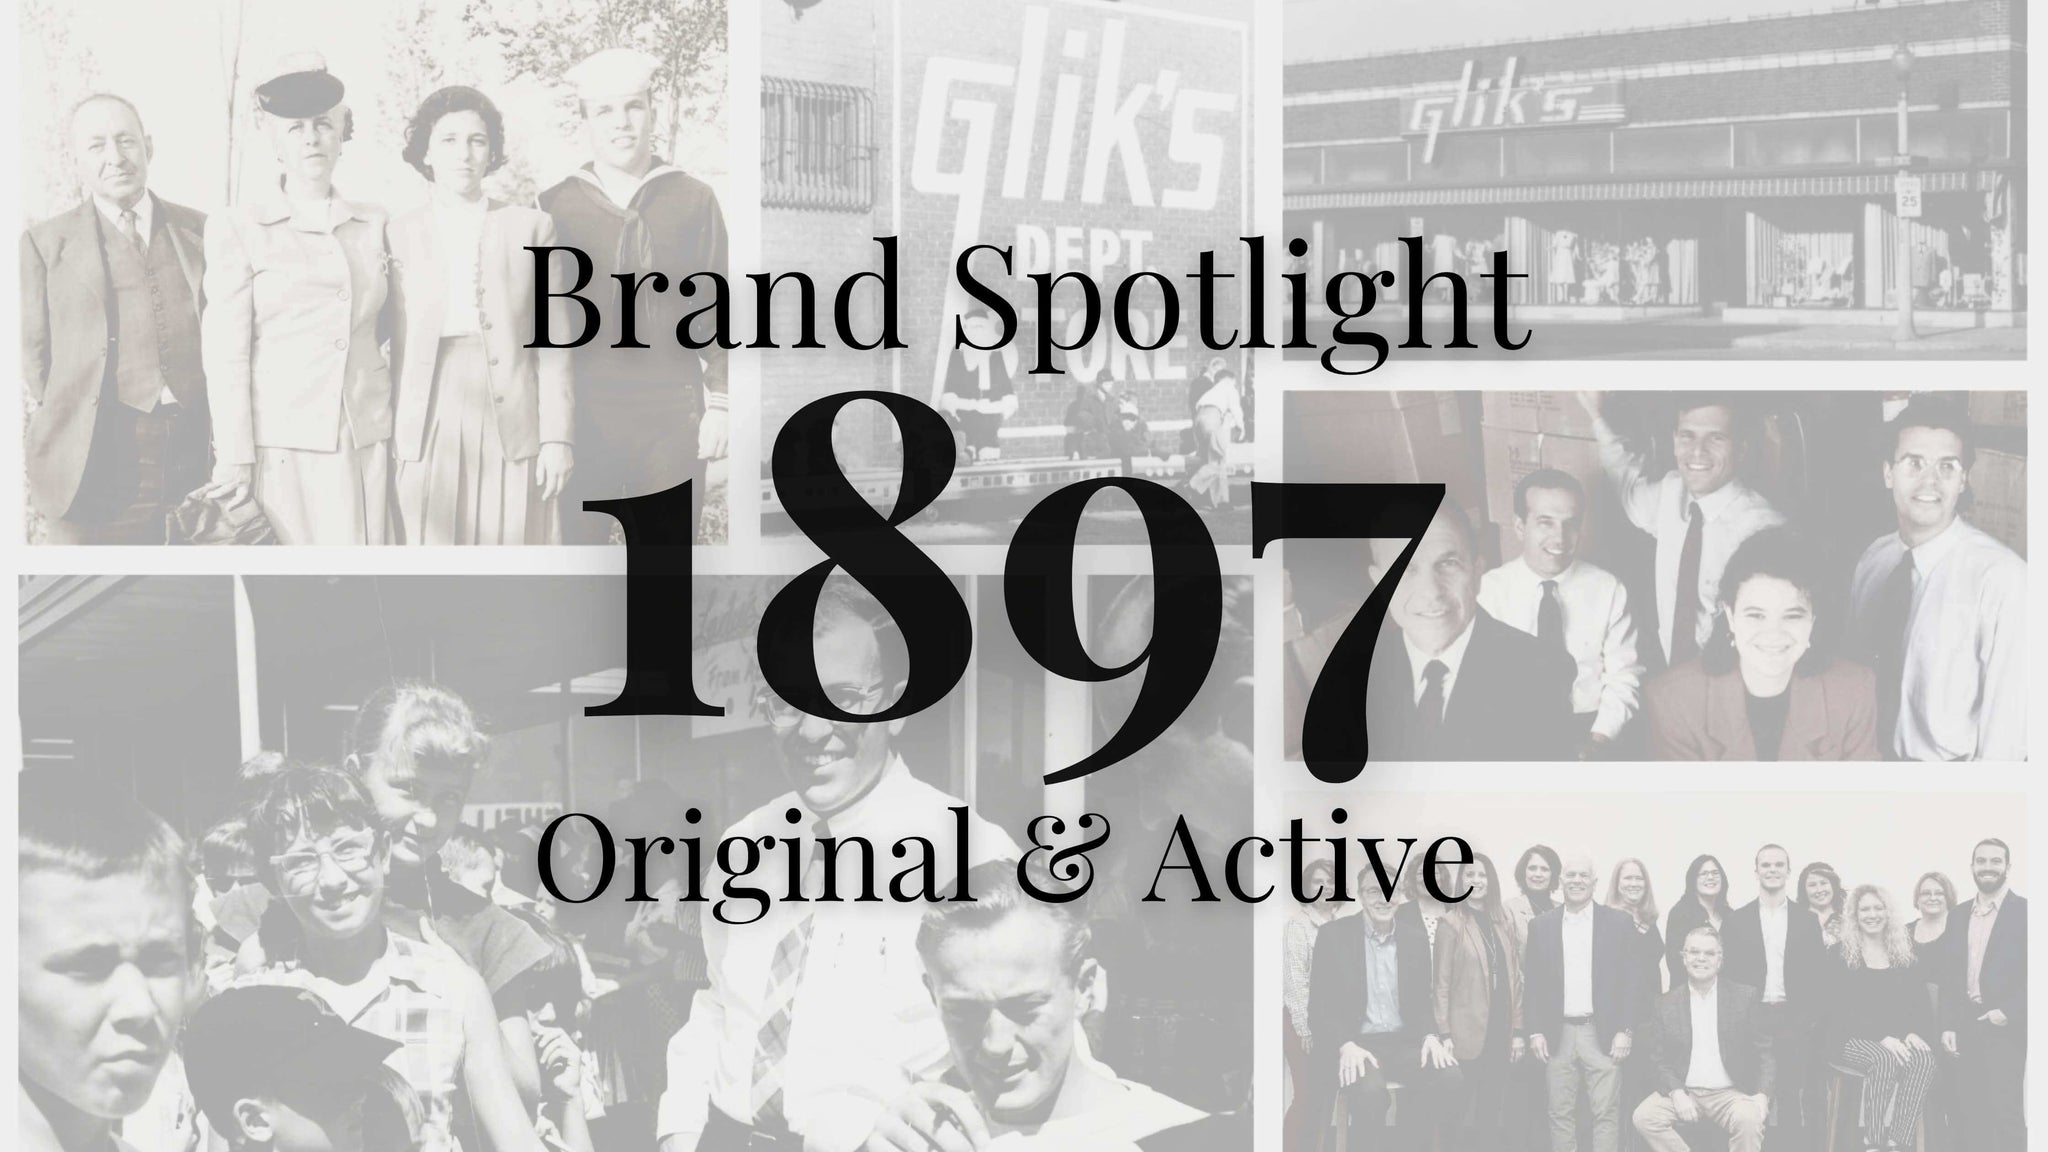 1897 Brand Spotlight